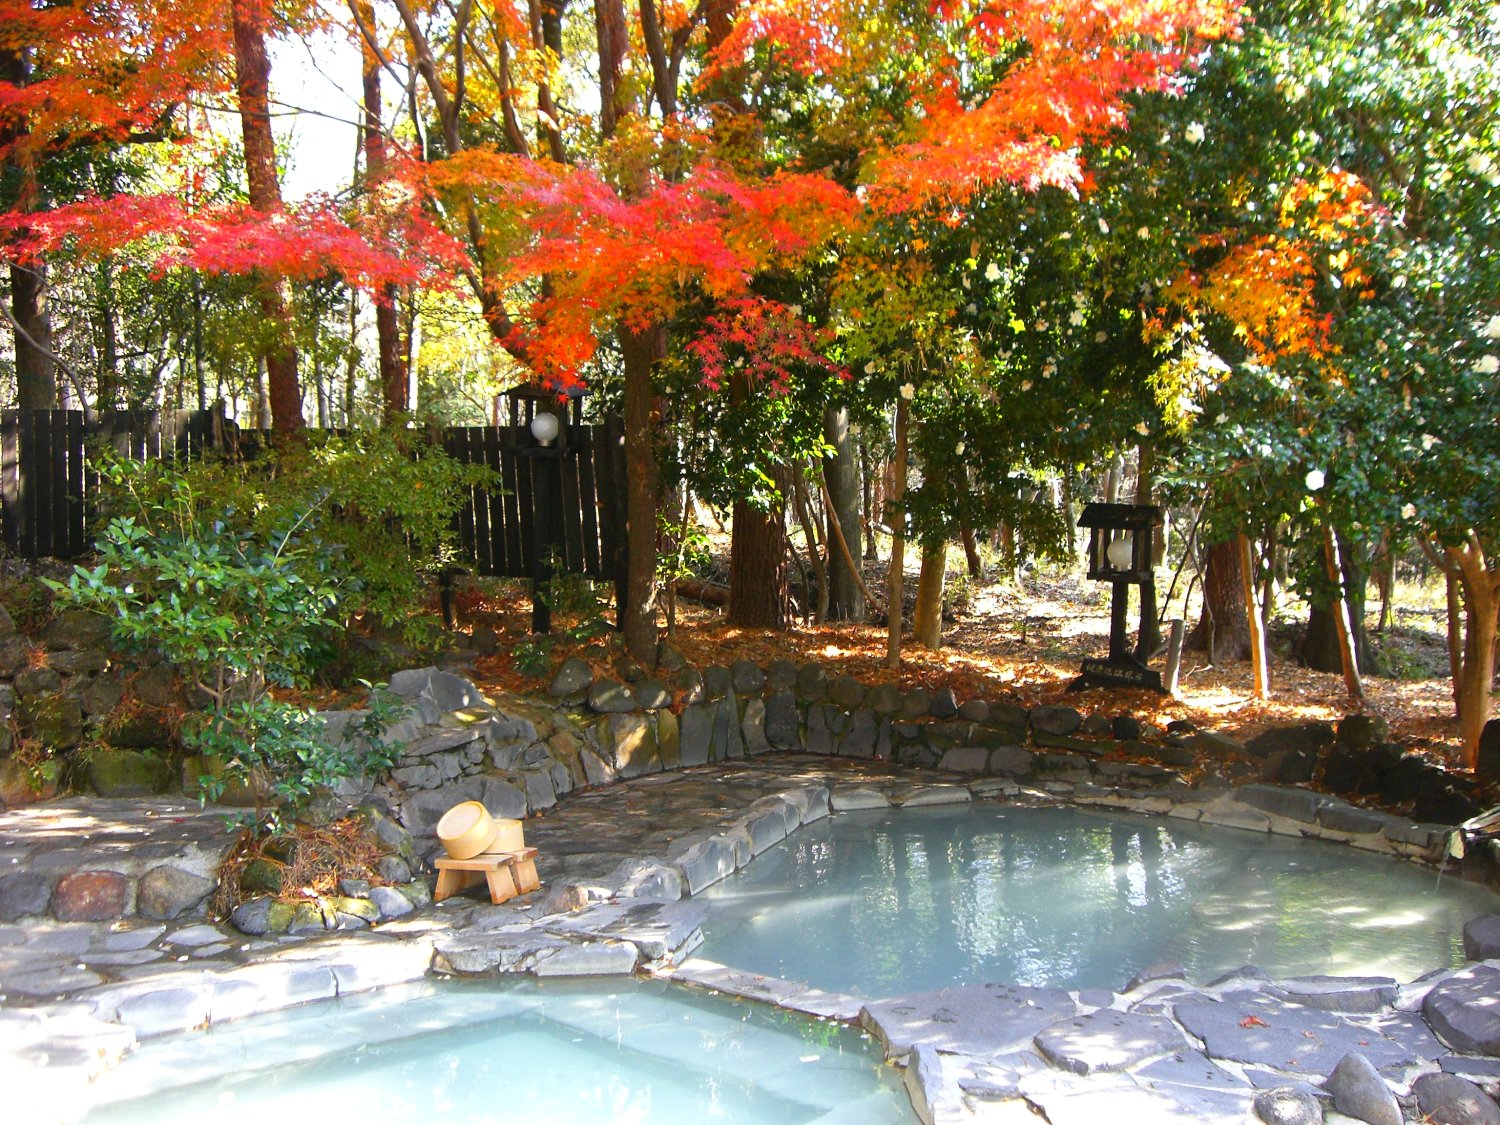 「赤松の湯」は360度さえぎるもののない、赤松林の中の貸切風呂。湯気の影響で、紅葉の見頃は11月中旬〜12月初旬と遅い。